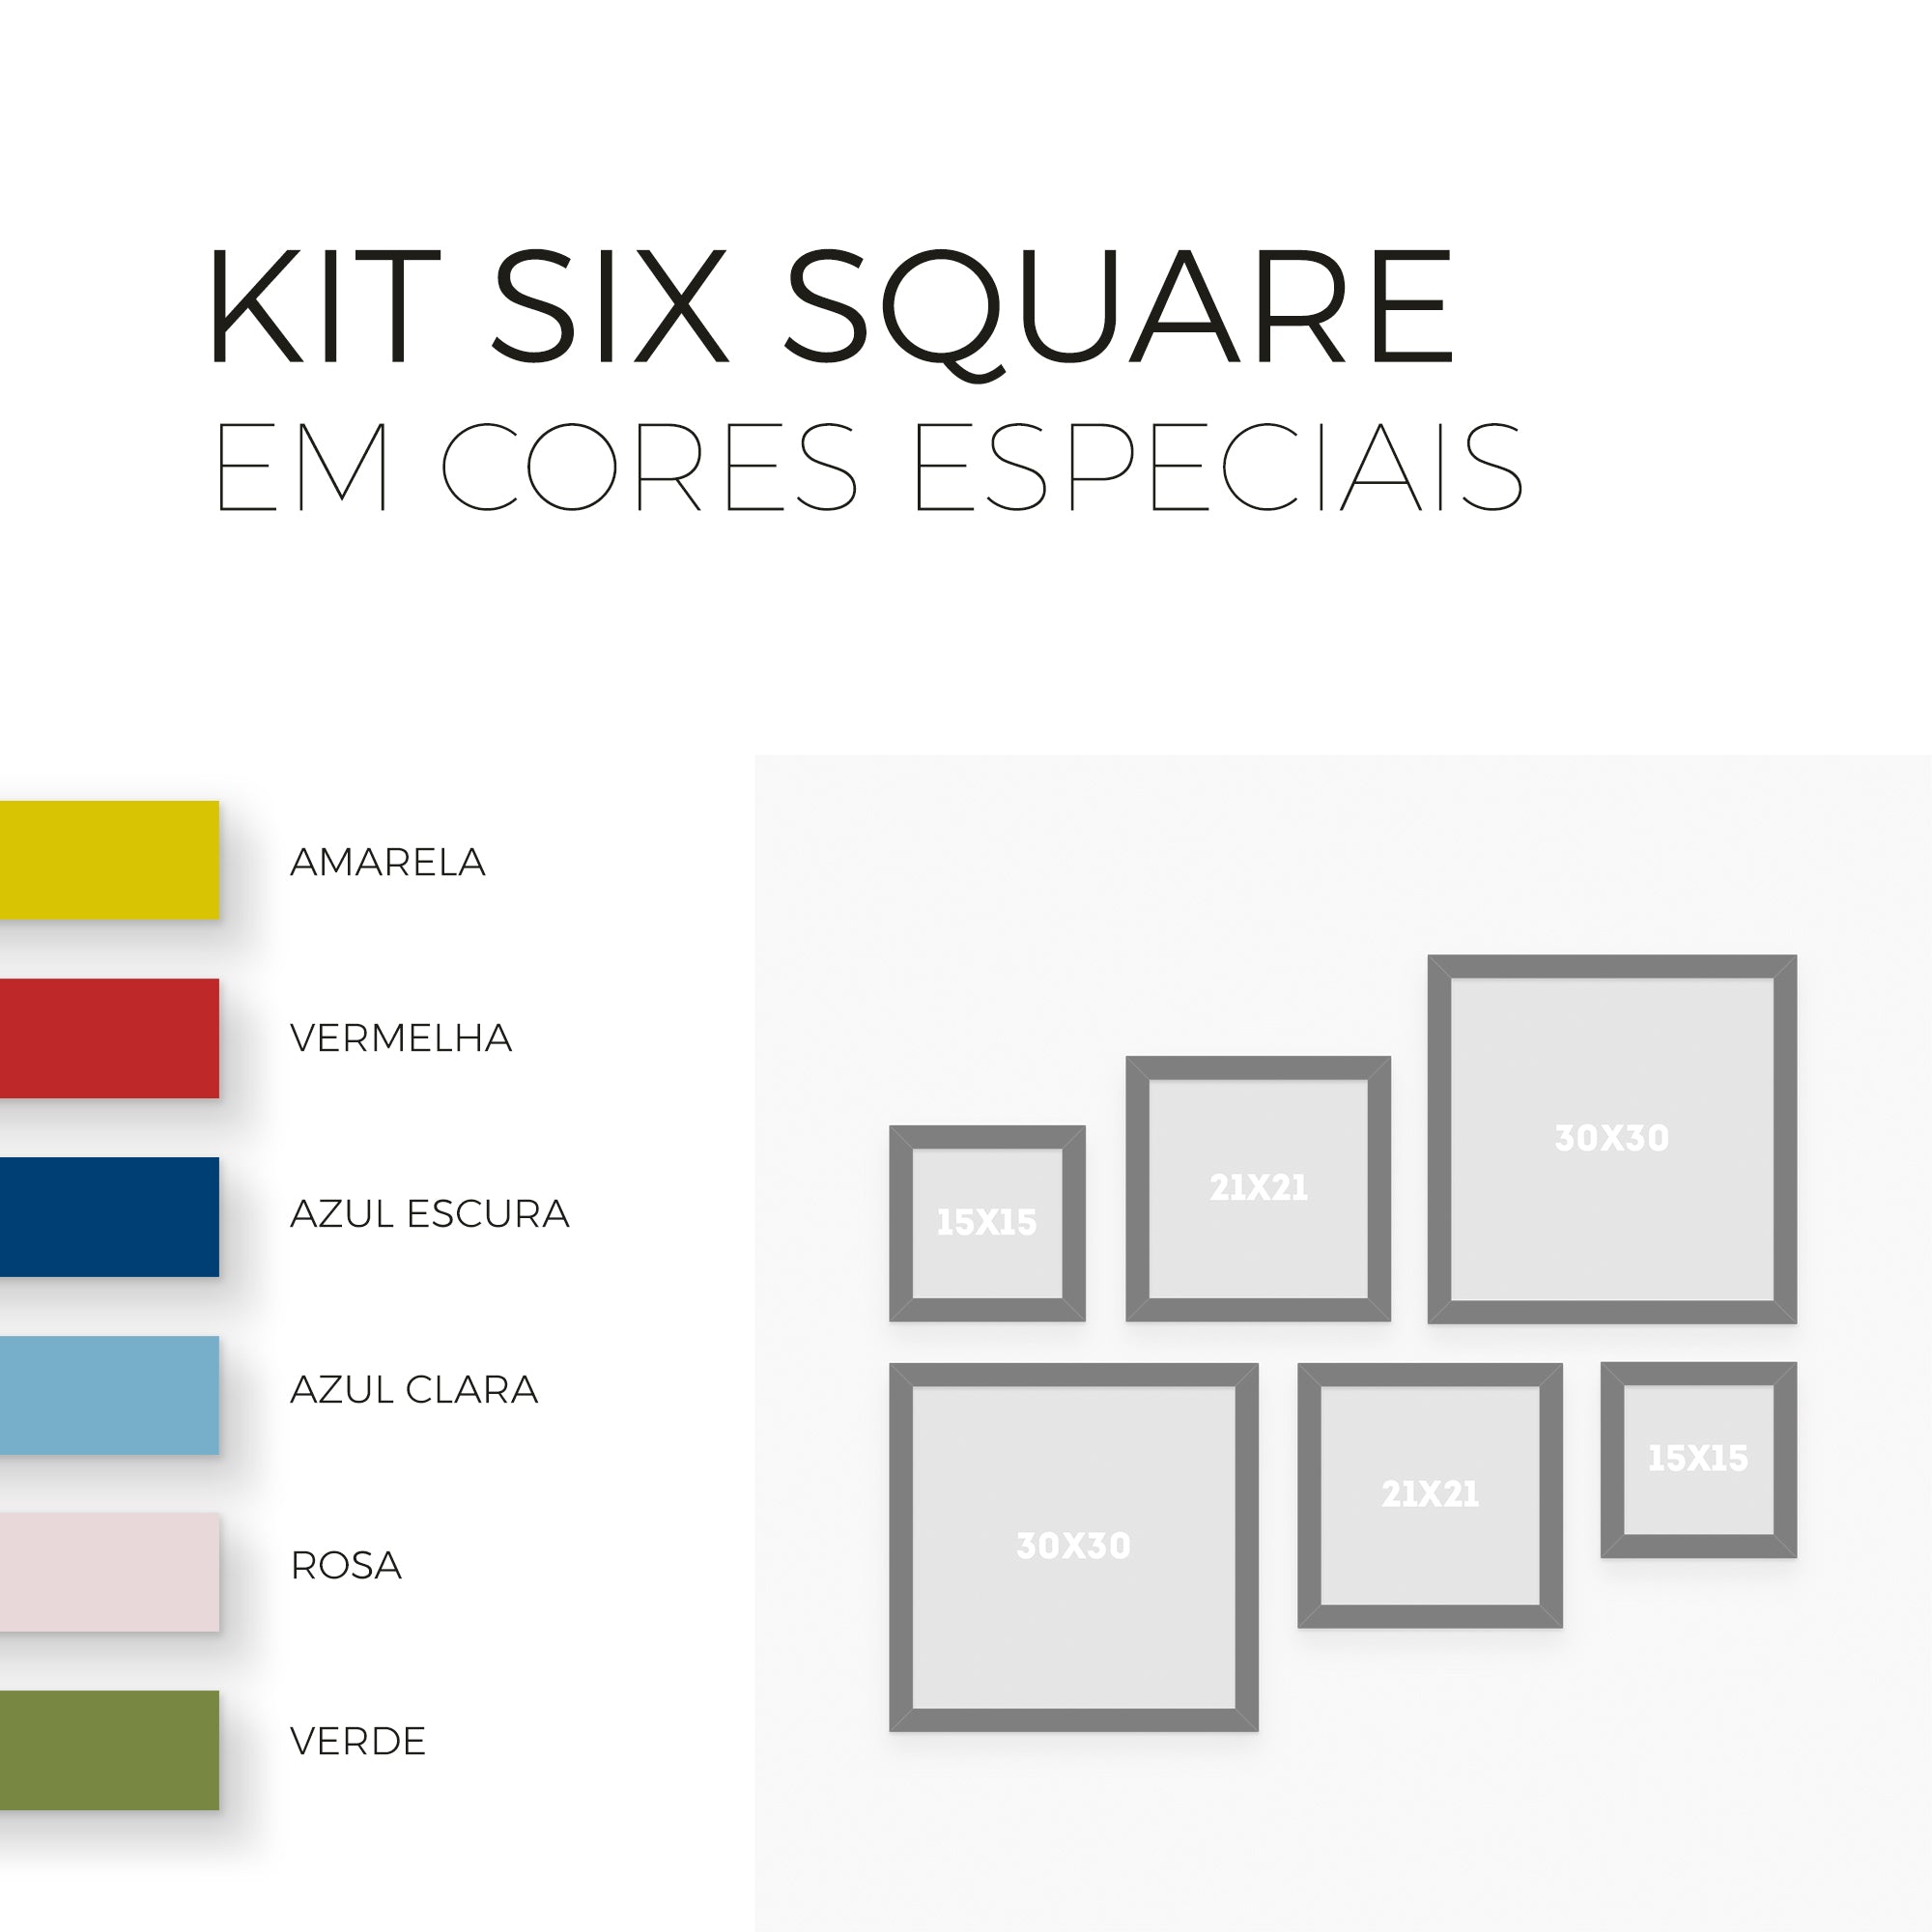 Six Square